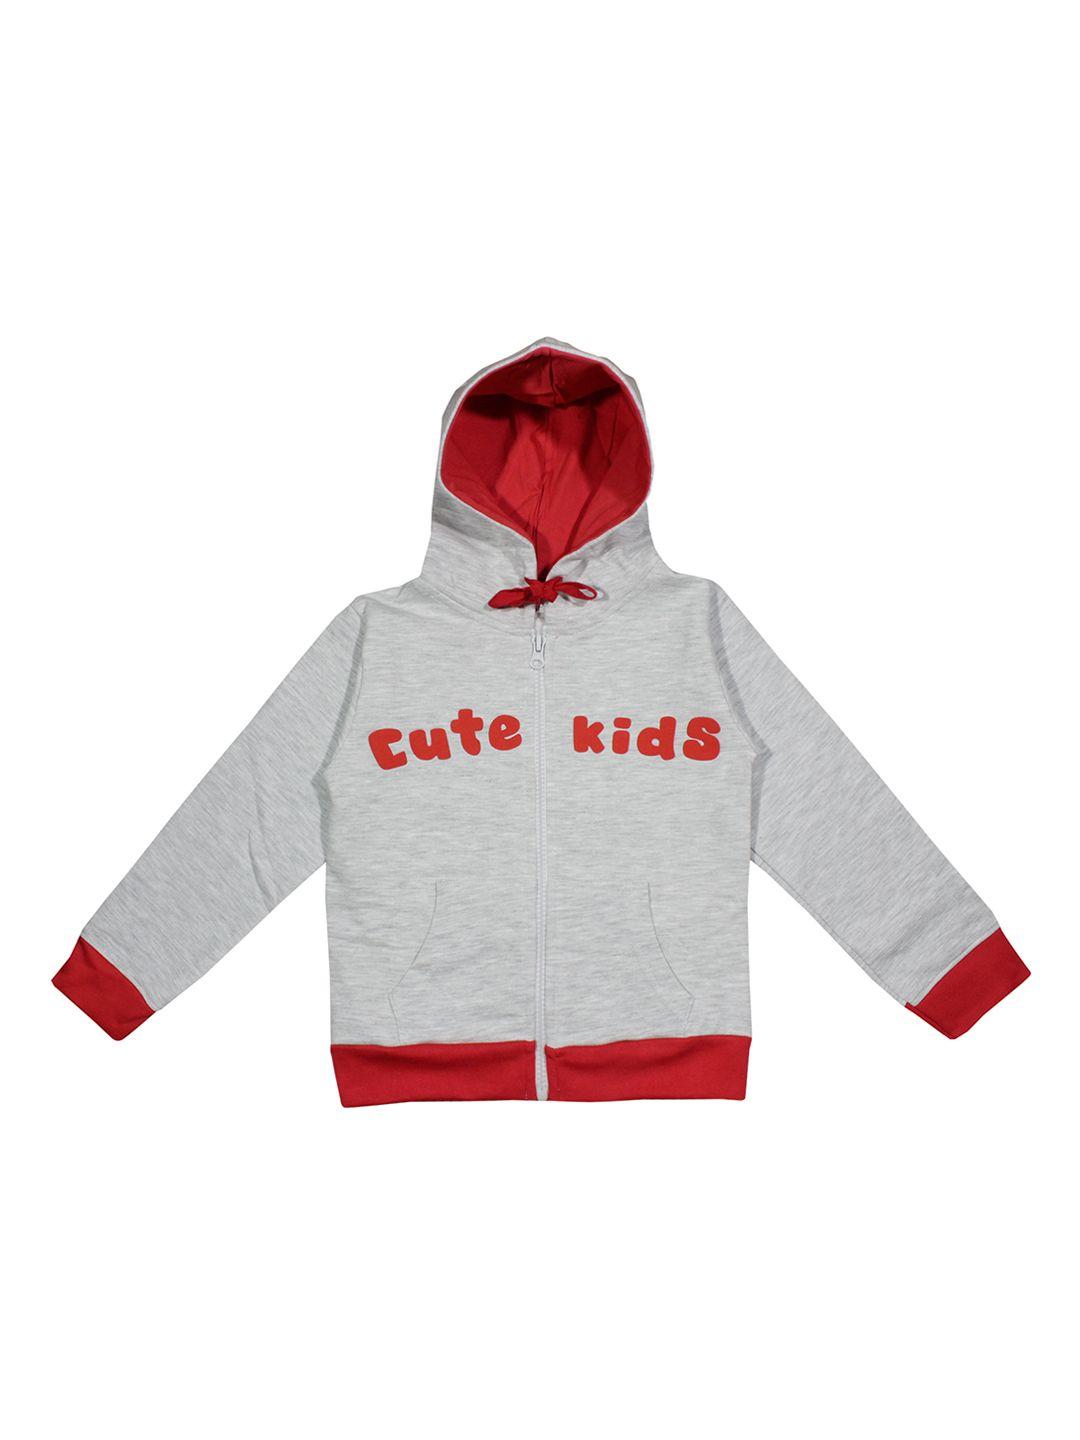 luke & lilly unisex grey melange & red printed hooded sweatshirt